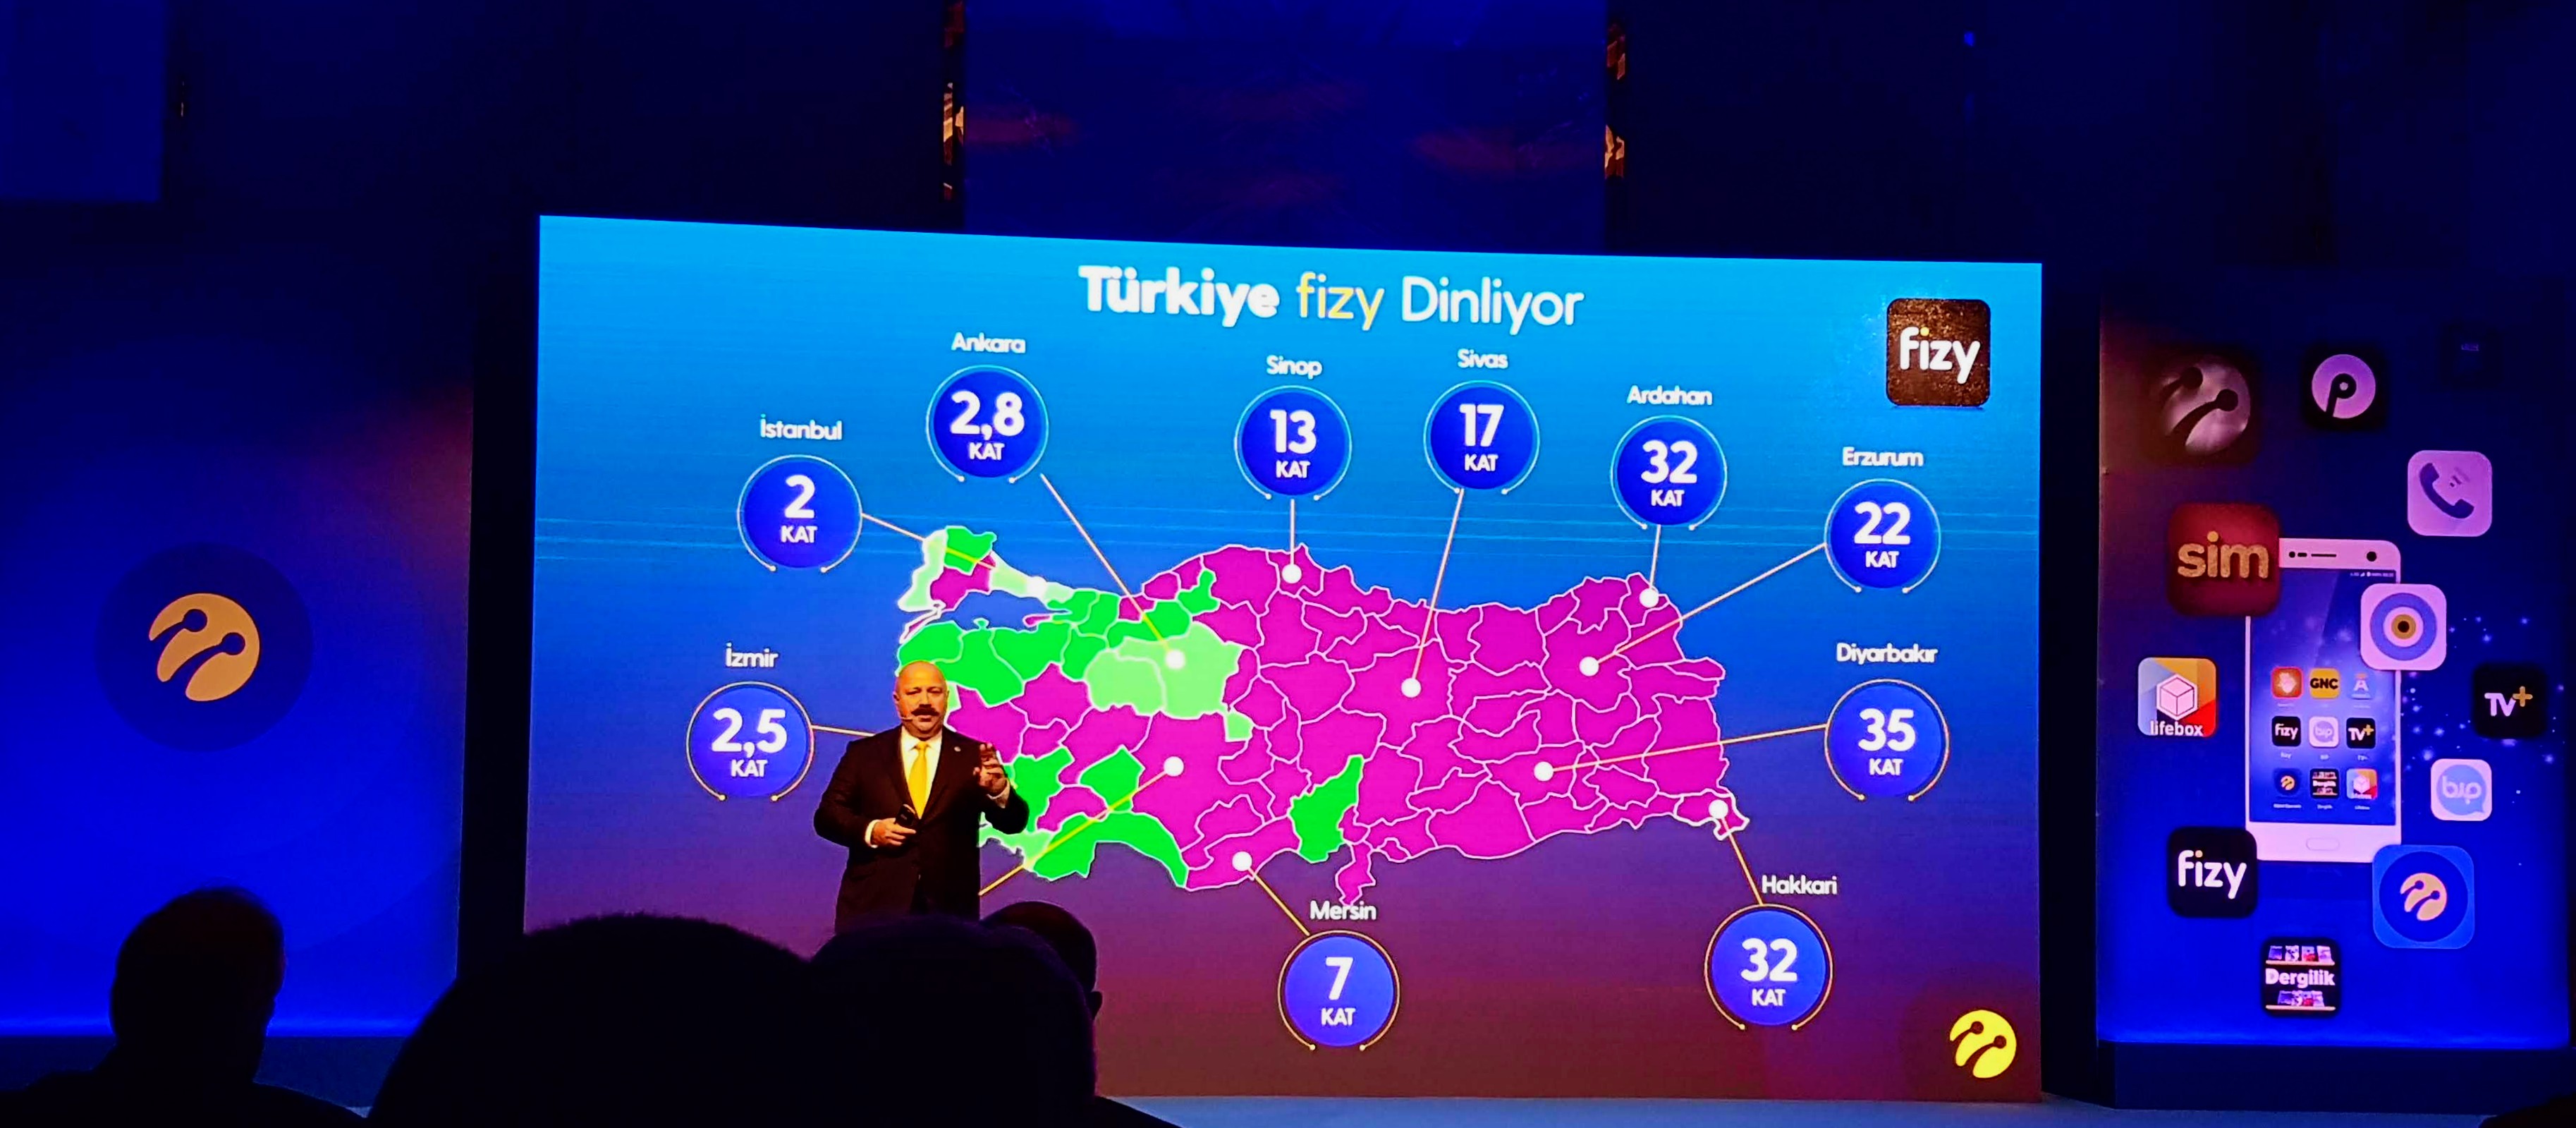 Turkcell, 2018 yılı finansal sonuçlarını açıkladı